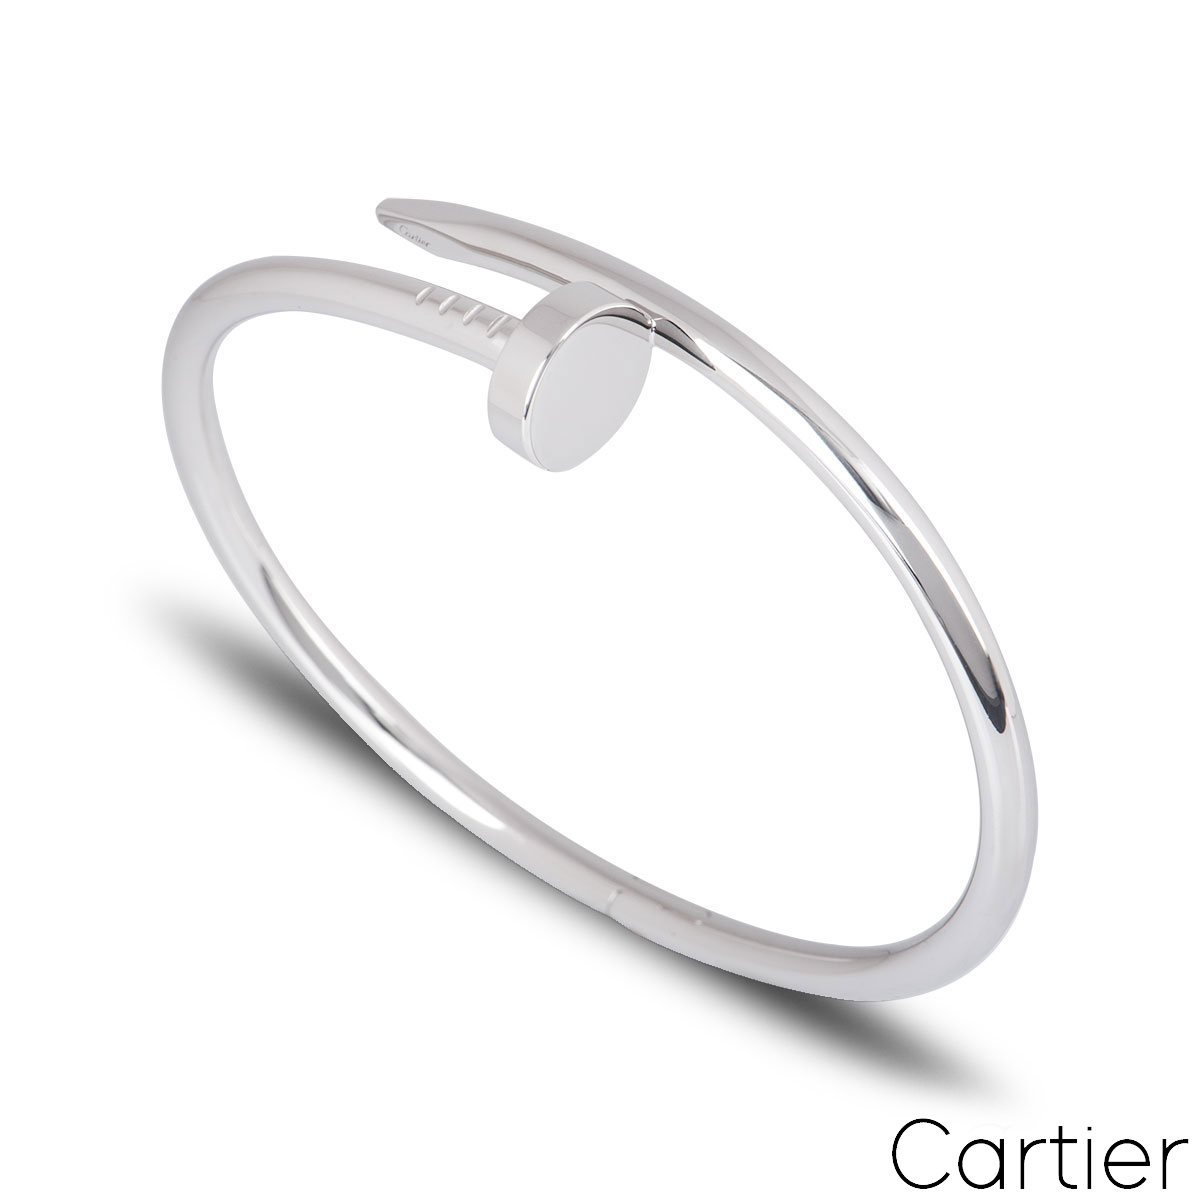 Cartier White Gold Plain Juste Un Clou Bracelet Size 17 B6048317